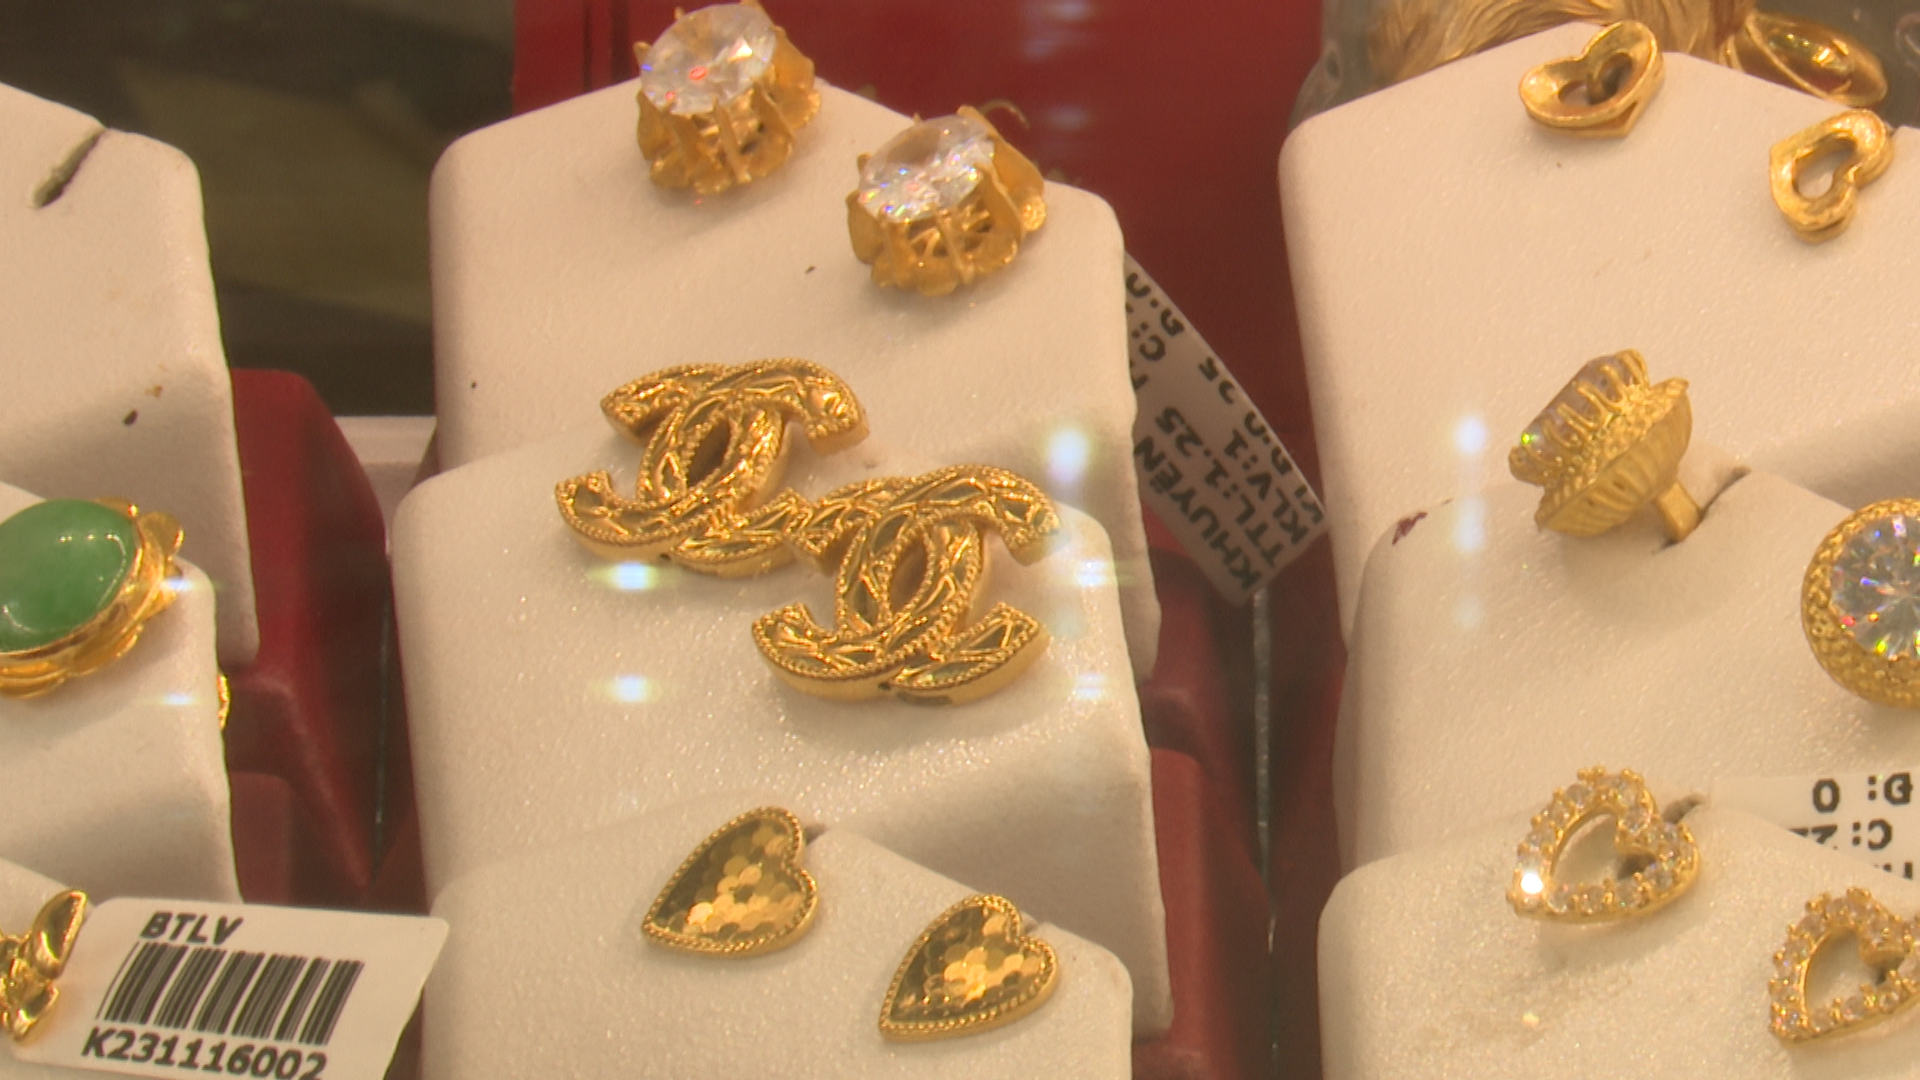 3 cửa hàng vàng bạc ở Hà Nội bày bán công khai hàng ngàn sản phẩm nữ trang có dấu hiệu giả thương hiệu- Ảnh 5.